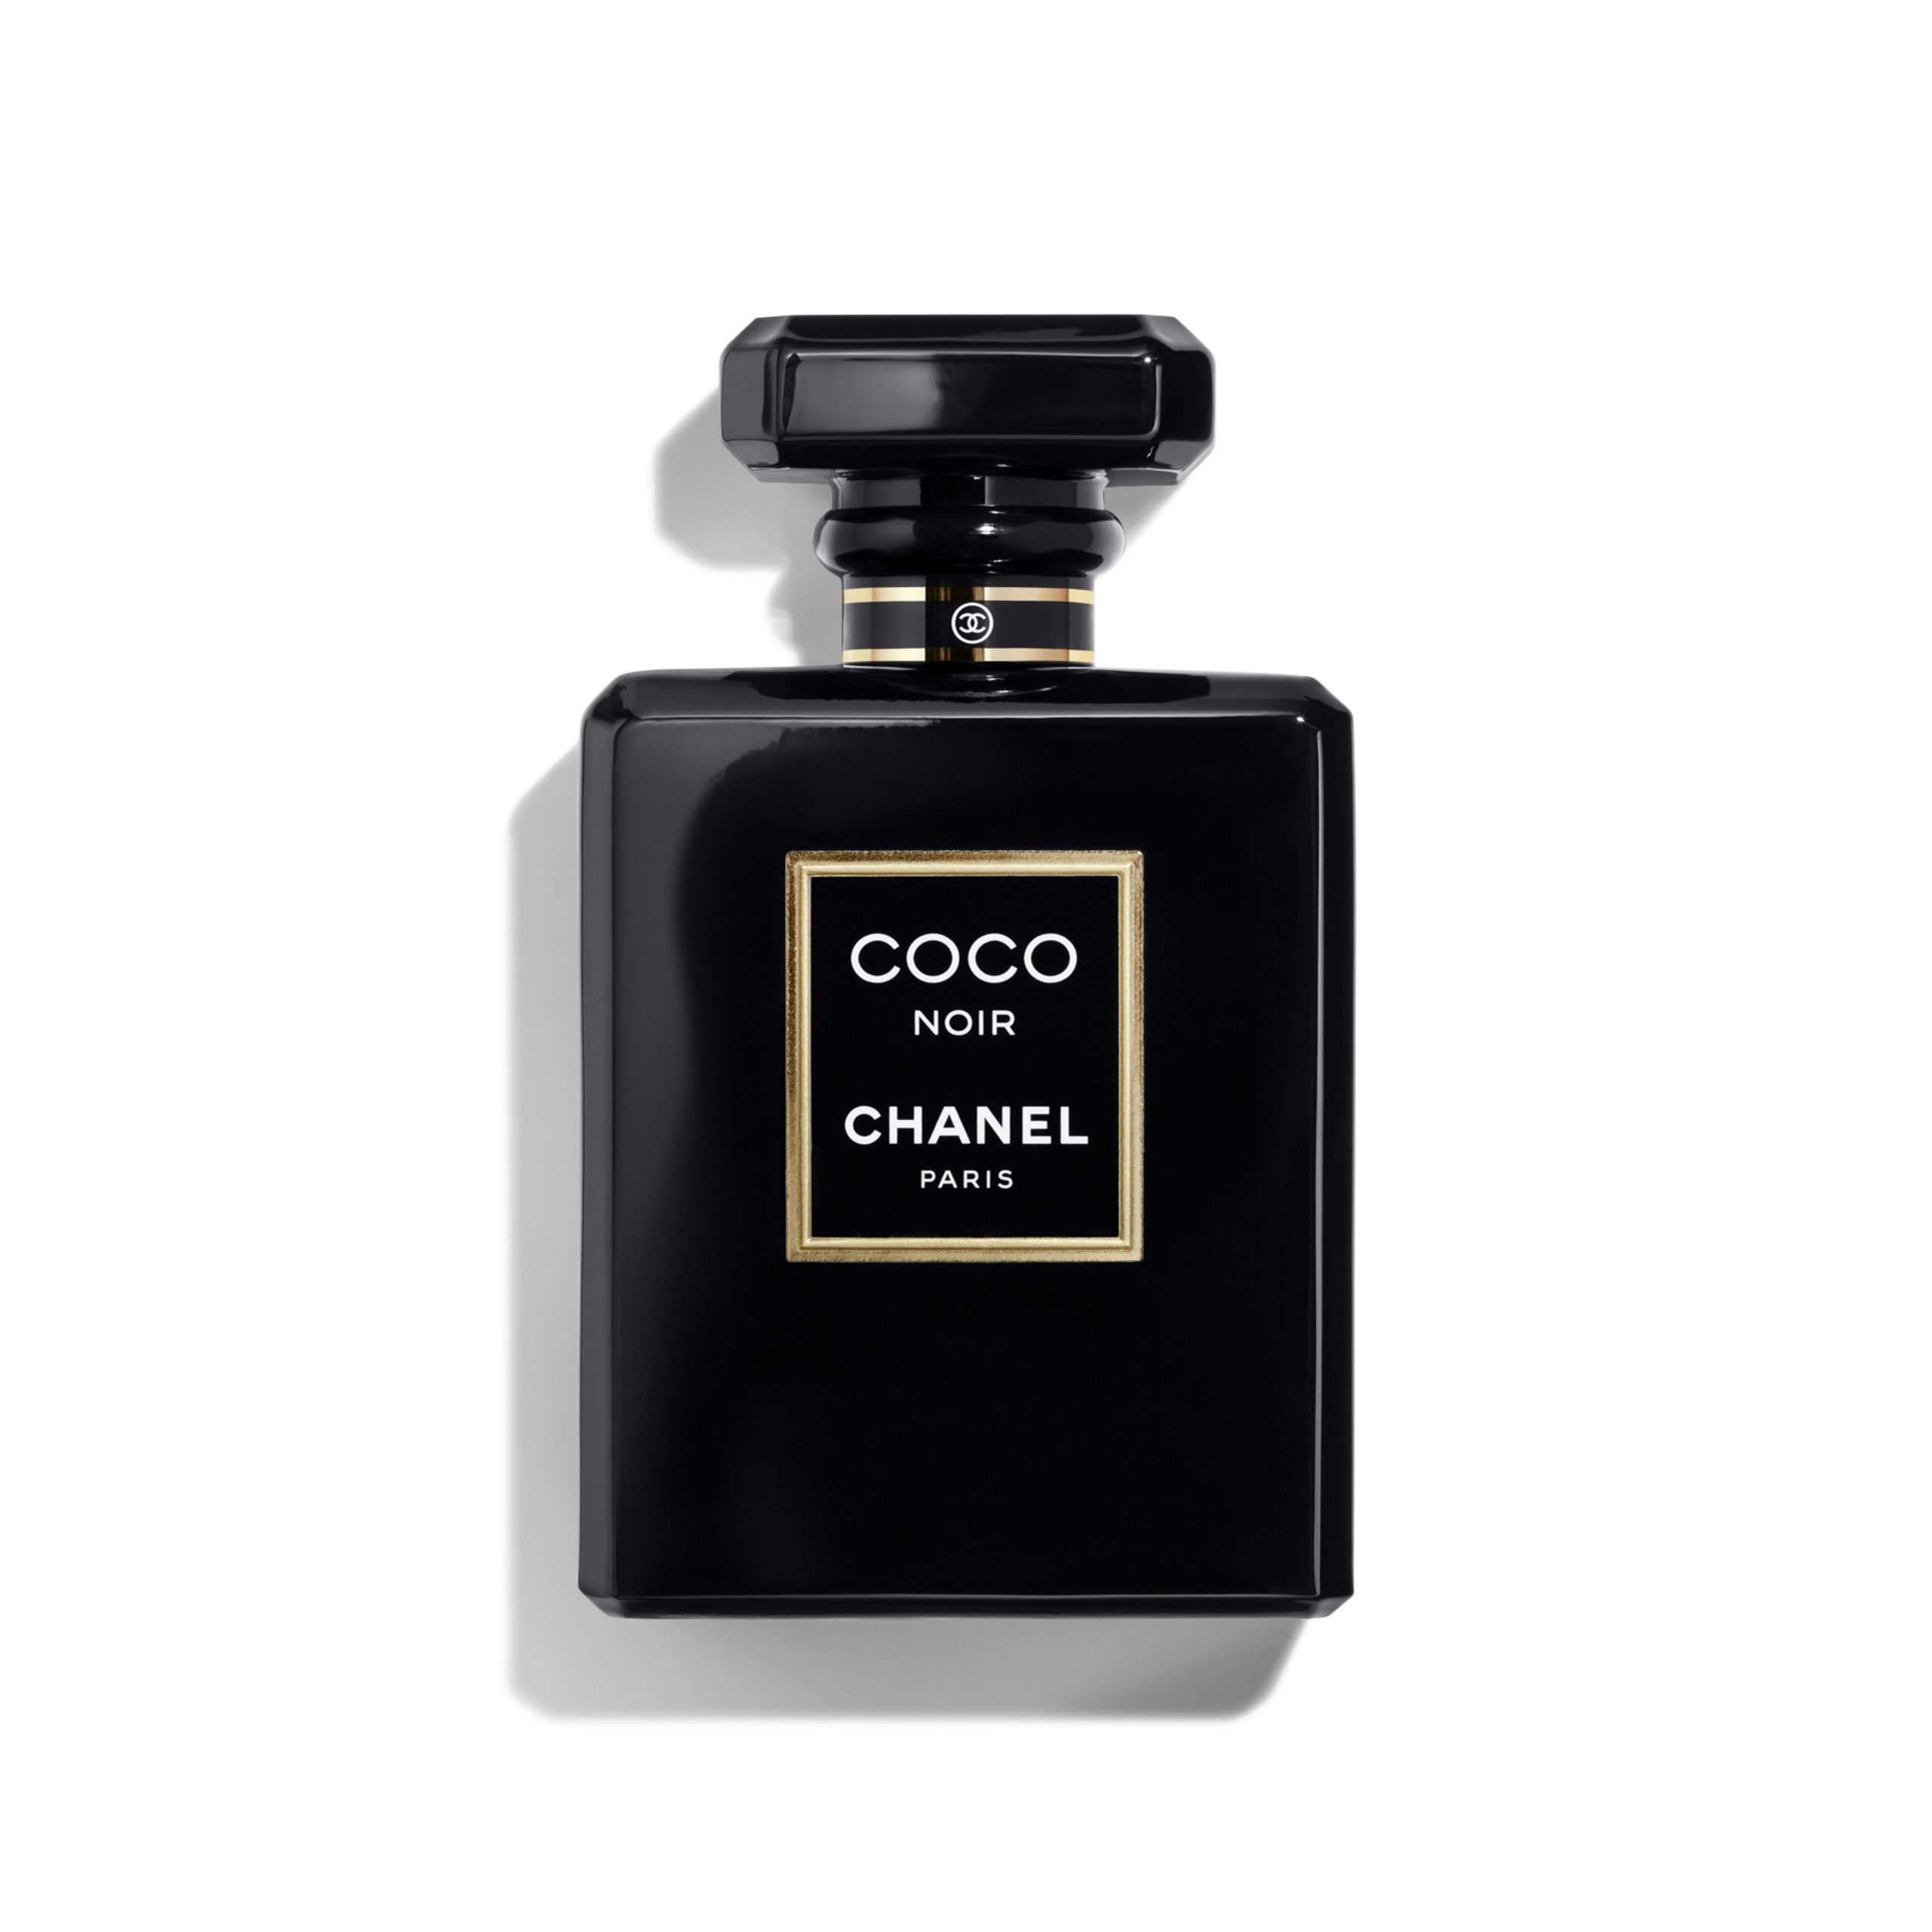 Chanel COCO Mademoiselle Leau Privée  Nuochoarosacom  Nước hoa cao cấp  chính hãng giá tốt mẫu mới